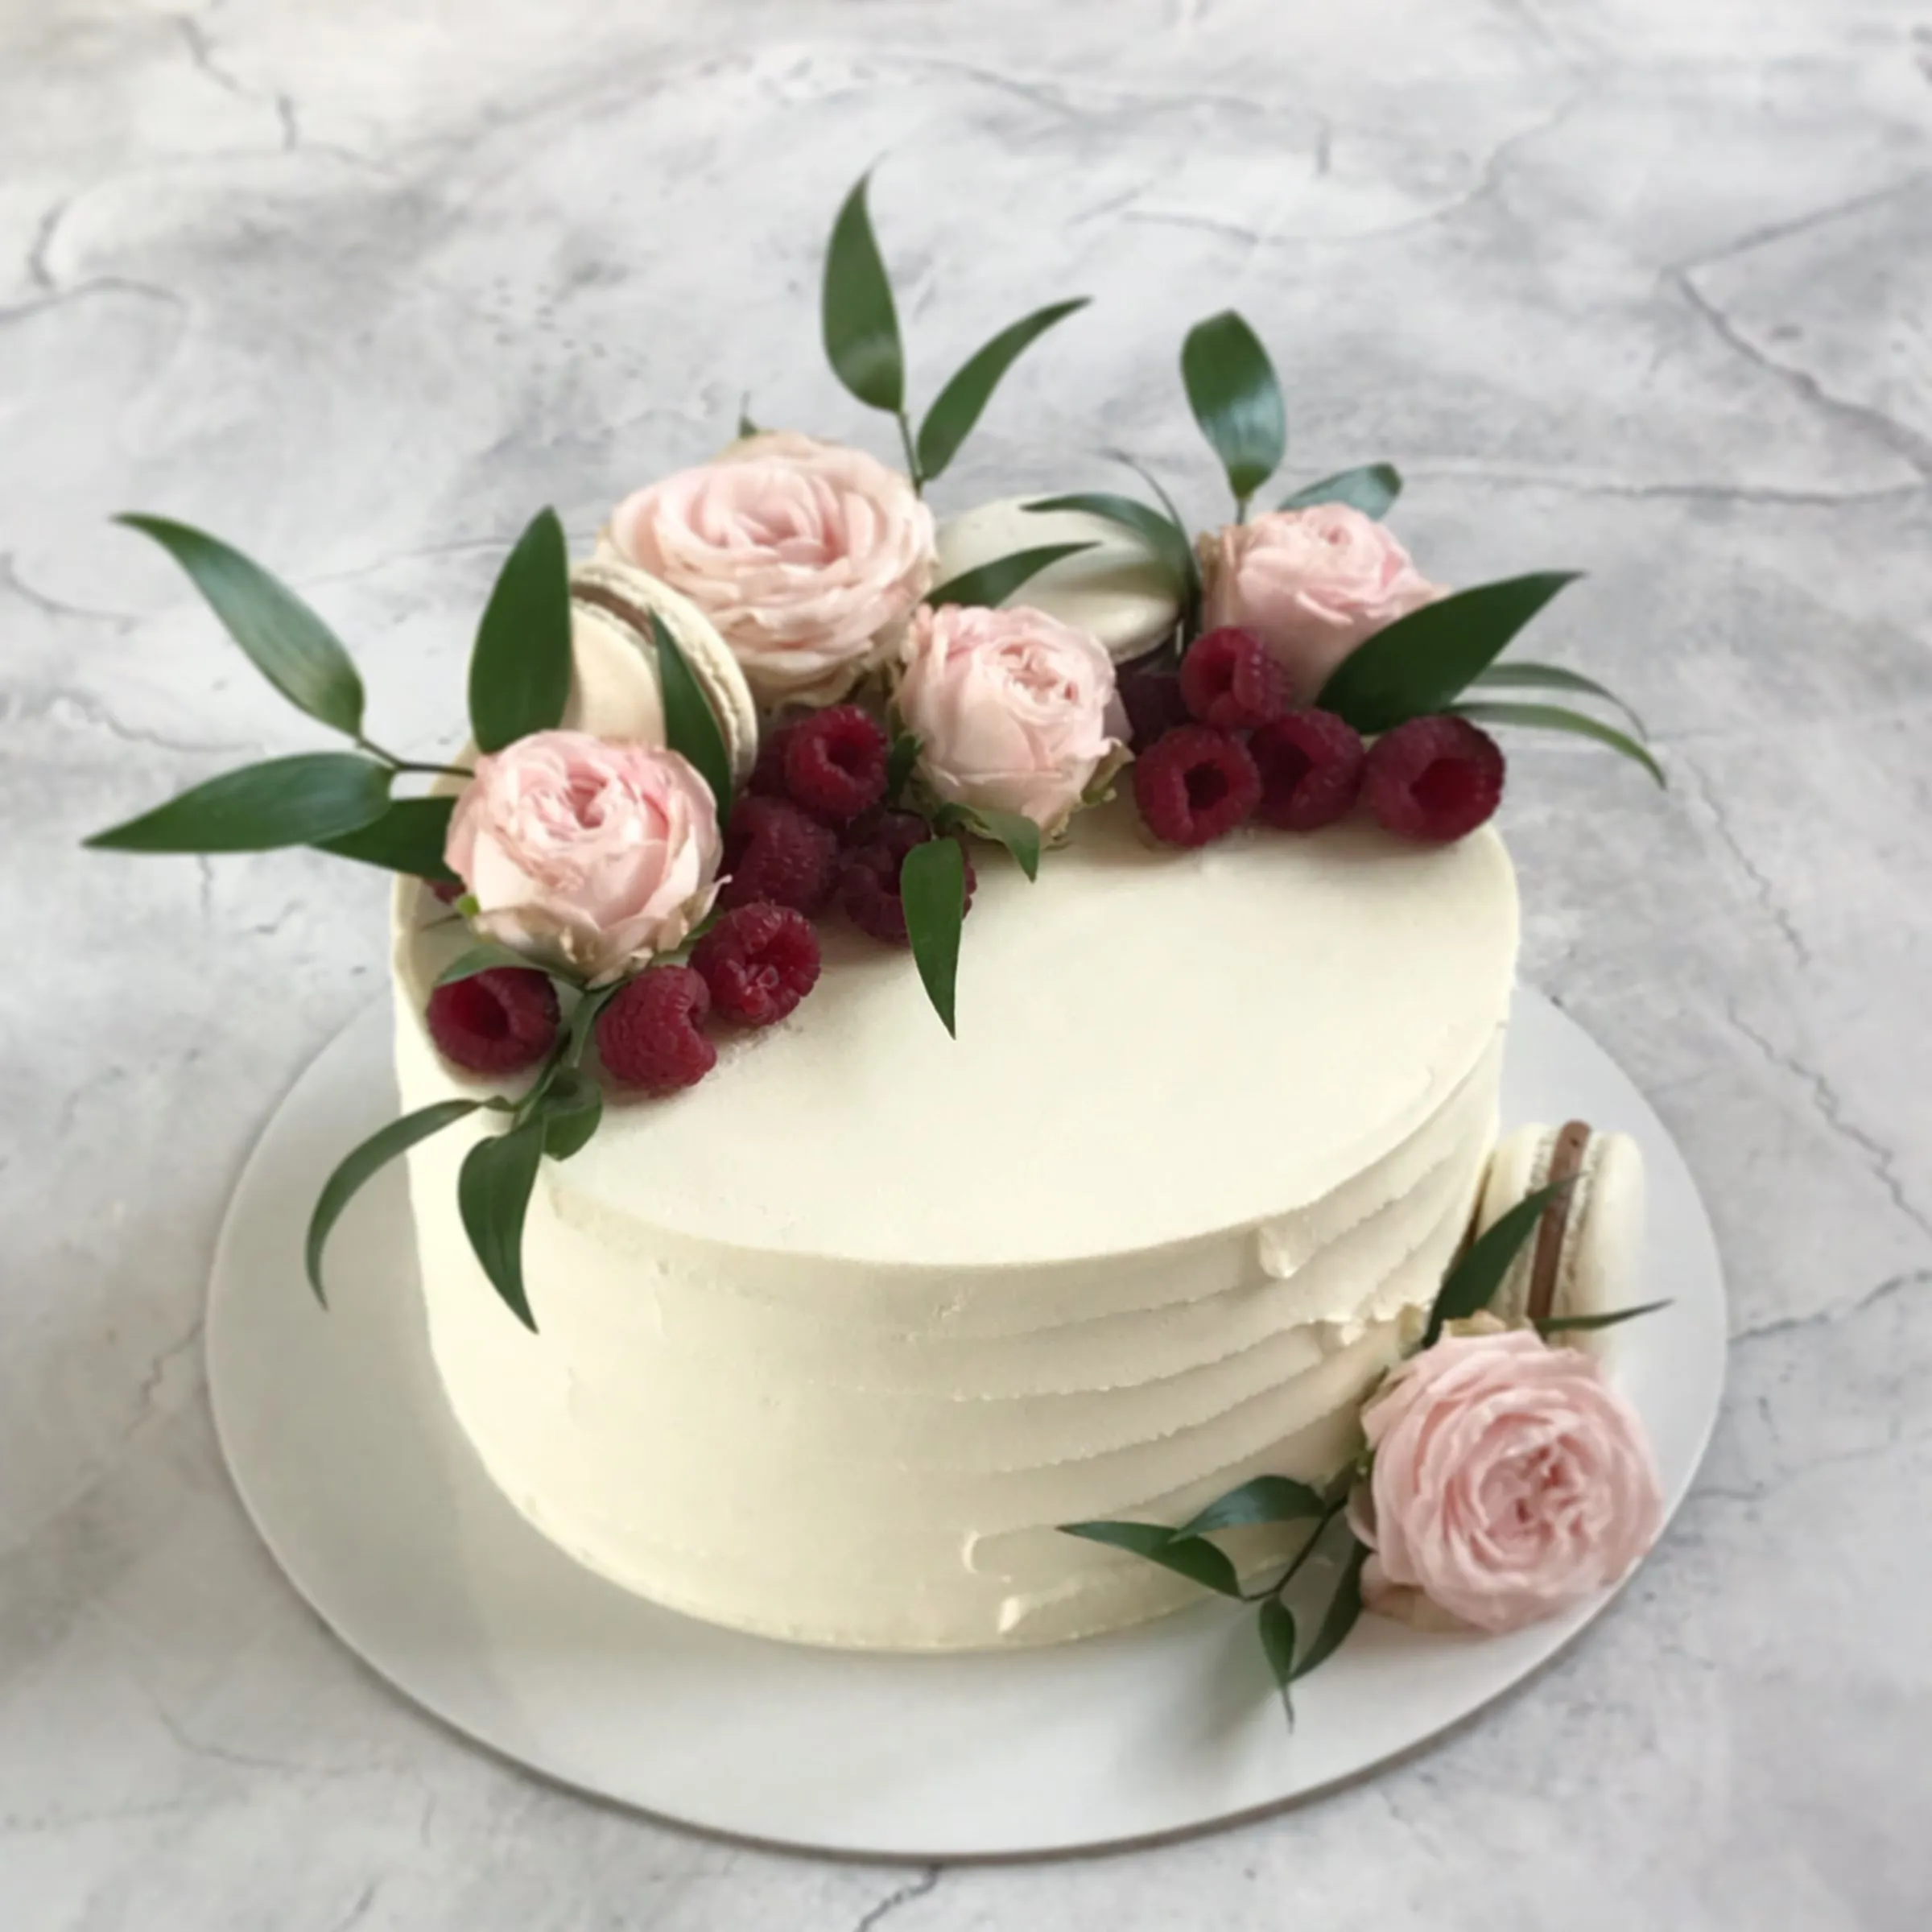 Выравнивание и украшение торта кремом чиз. Торт крем чиз цветы. Цветы из крема чиз для торта. Торт с кремом крем чиз. Торт с кремовыми цветами.